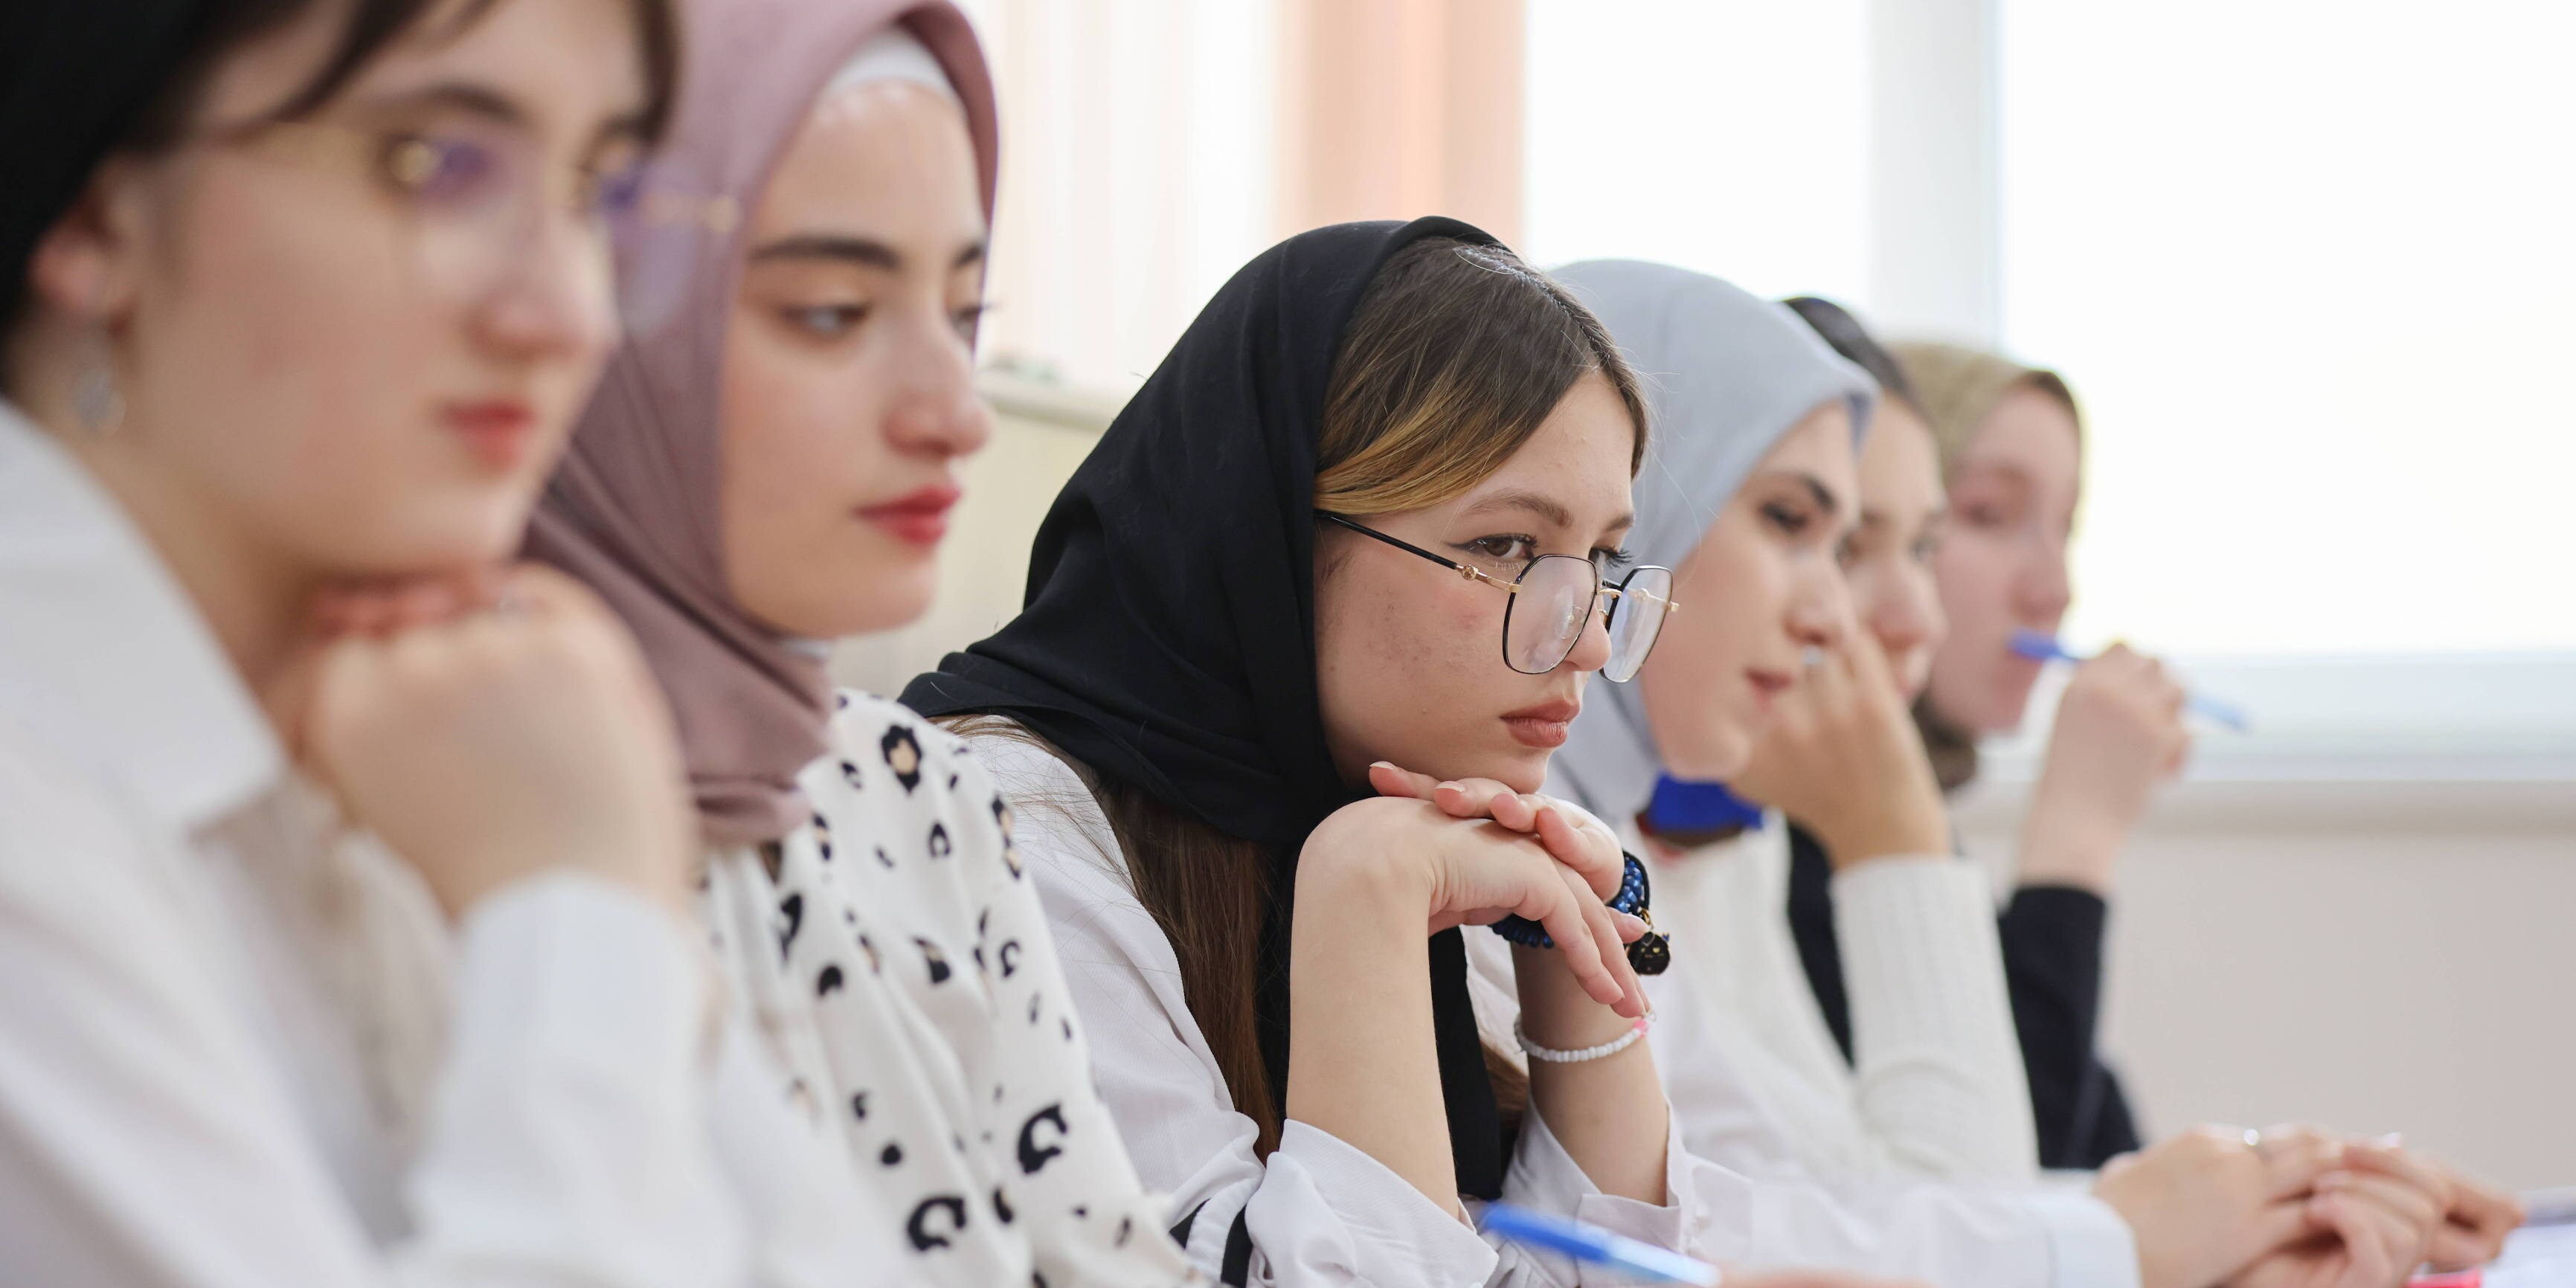 studie - jeder vierte islamlehrer in deutschland will islamisierung des rechtssystems